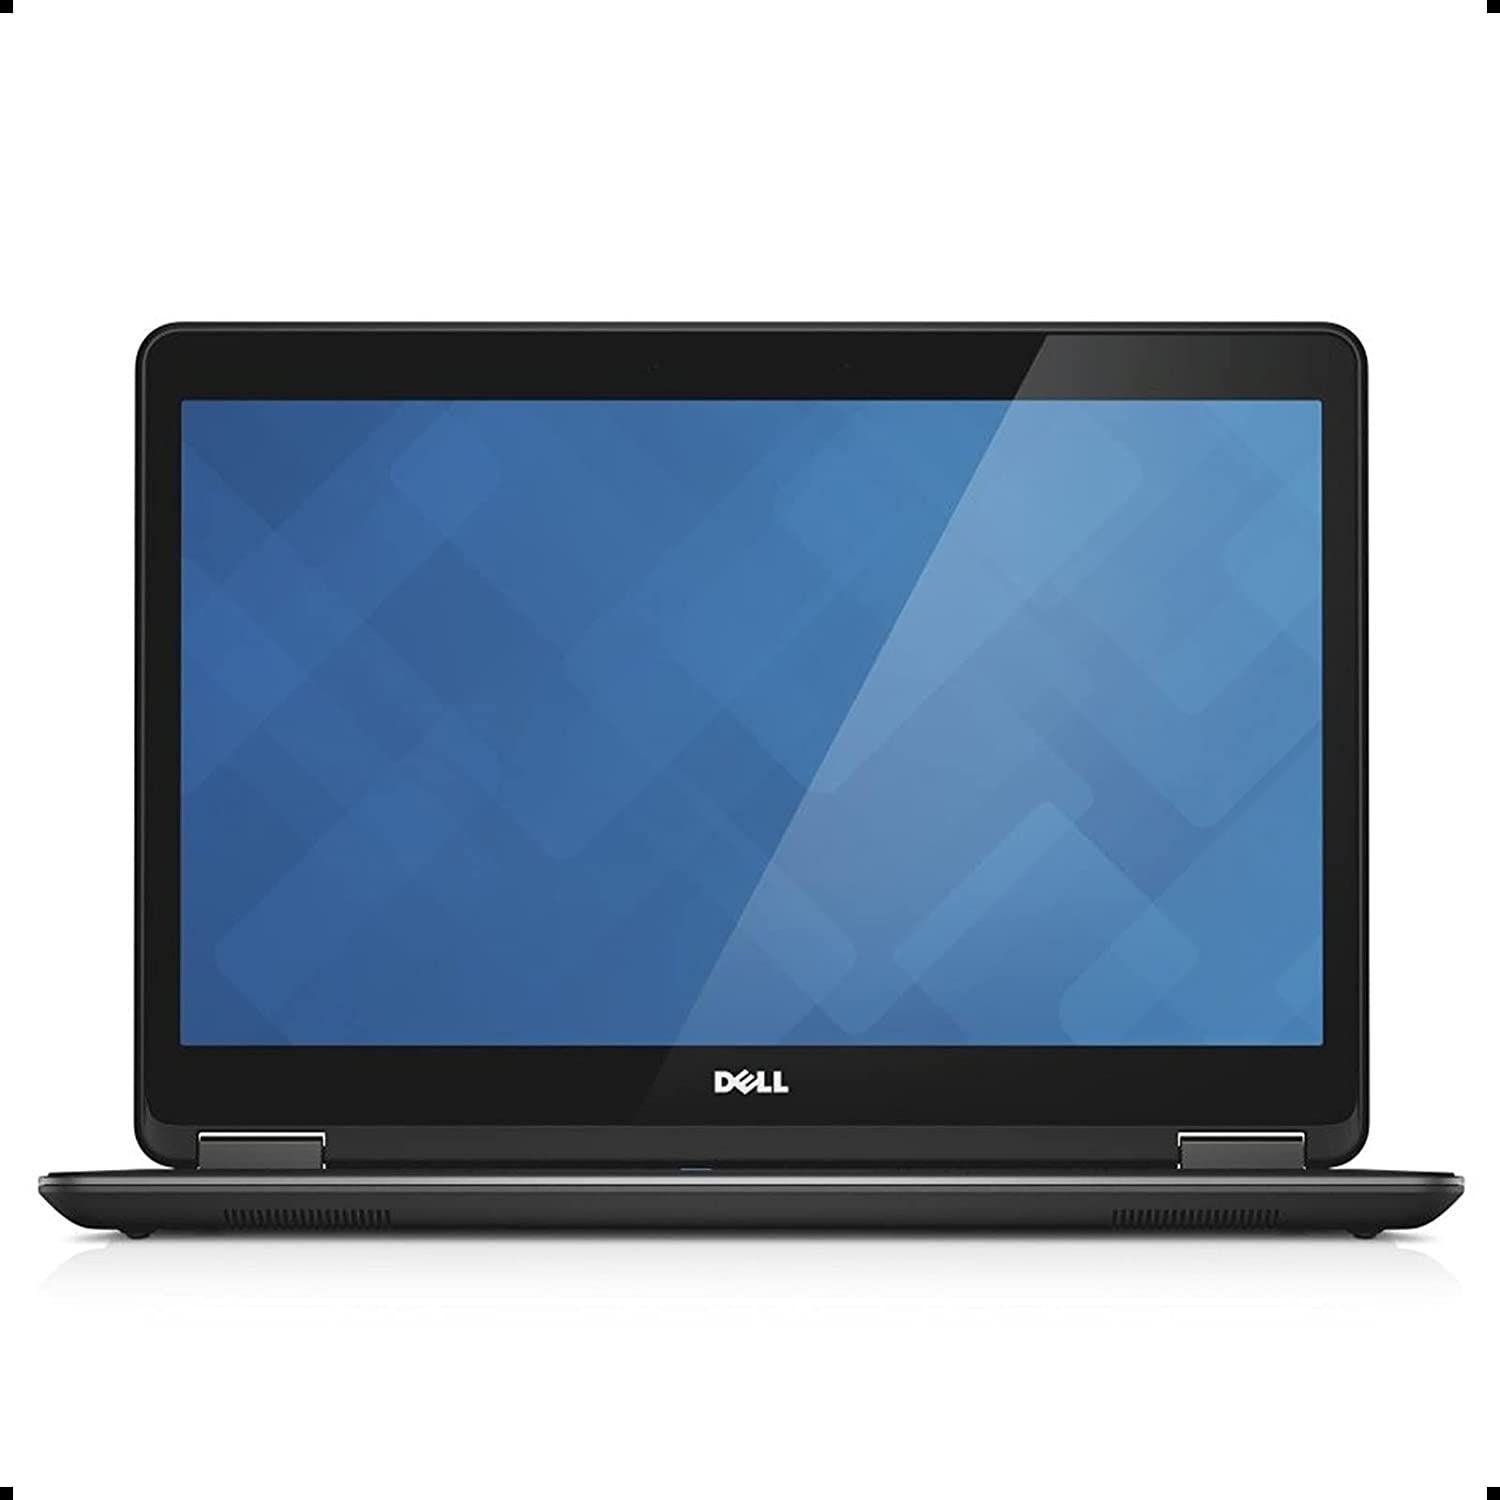 Dell Lattiude E7440 i7 4th Gen 256GB SSD - Good Condition